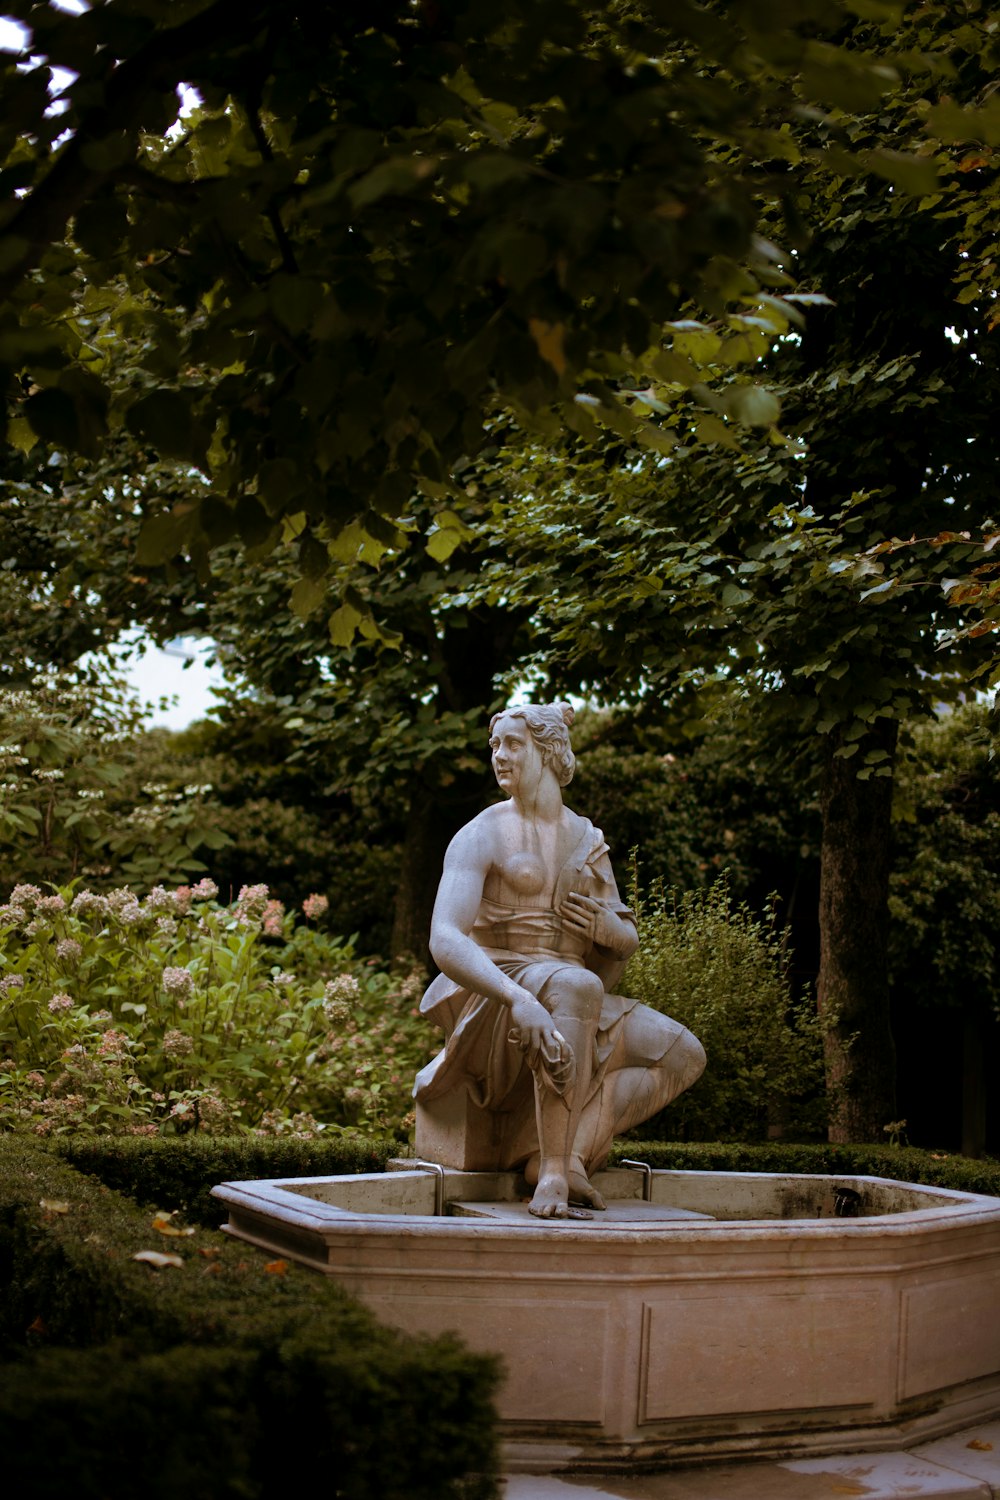 분수 위에 앉아있는 남자의 동상